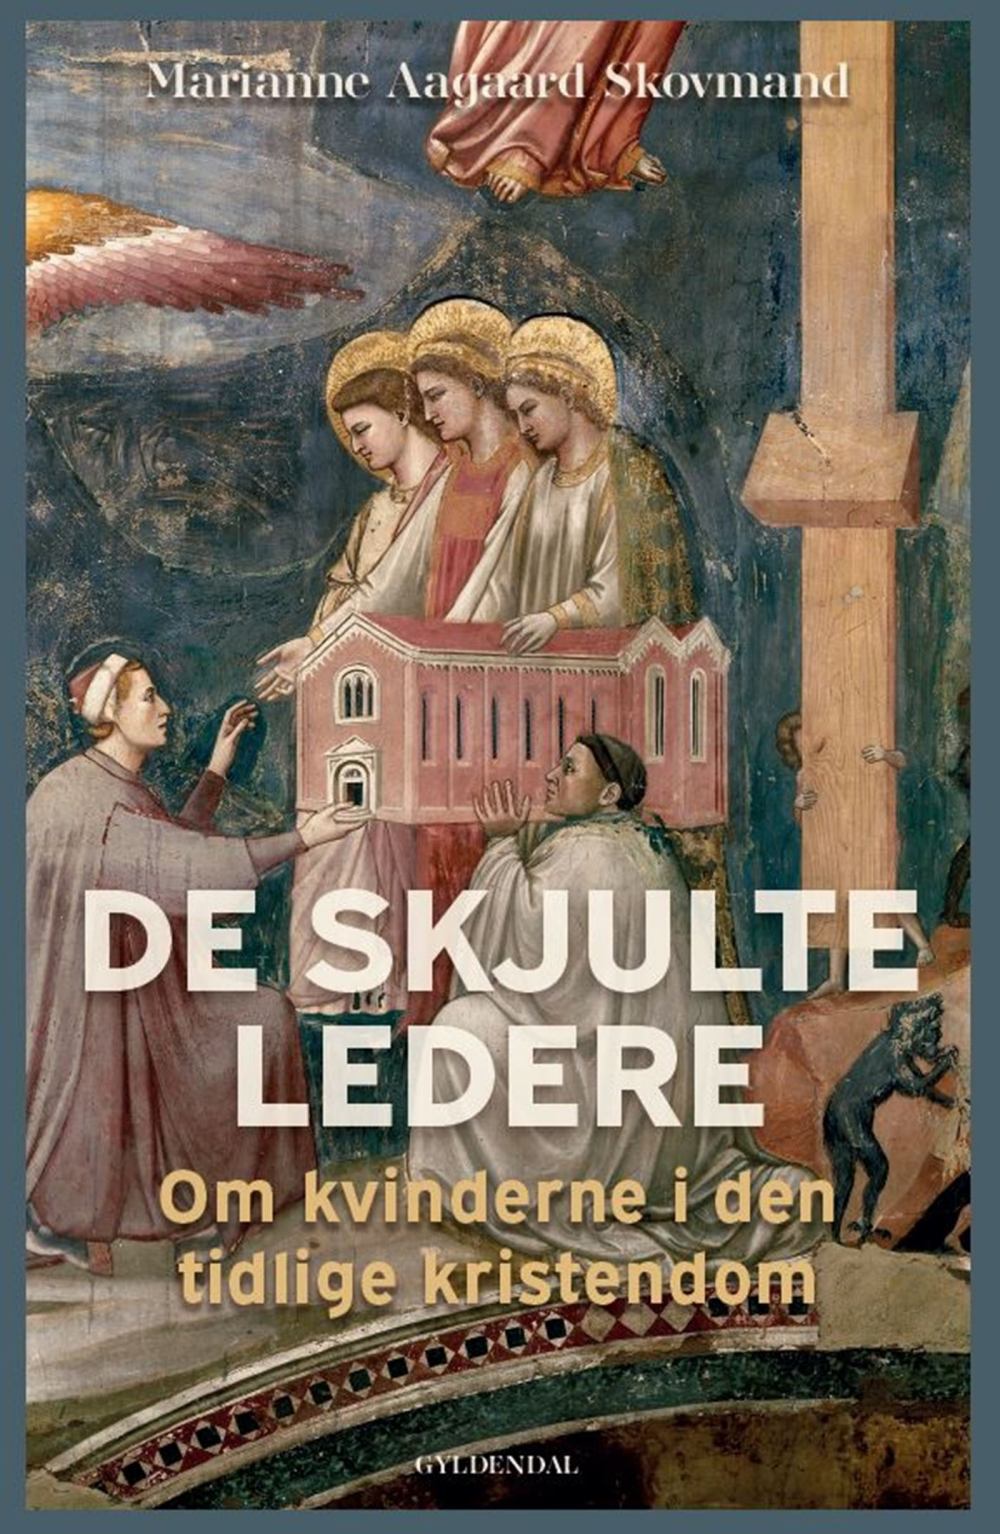 Forsiden af Skovmands bog, De skjulte ledere, der bygger på forskningen om kvindernes rolle i den tidlige kristendom.